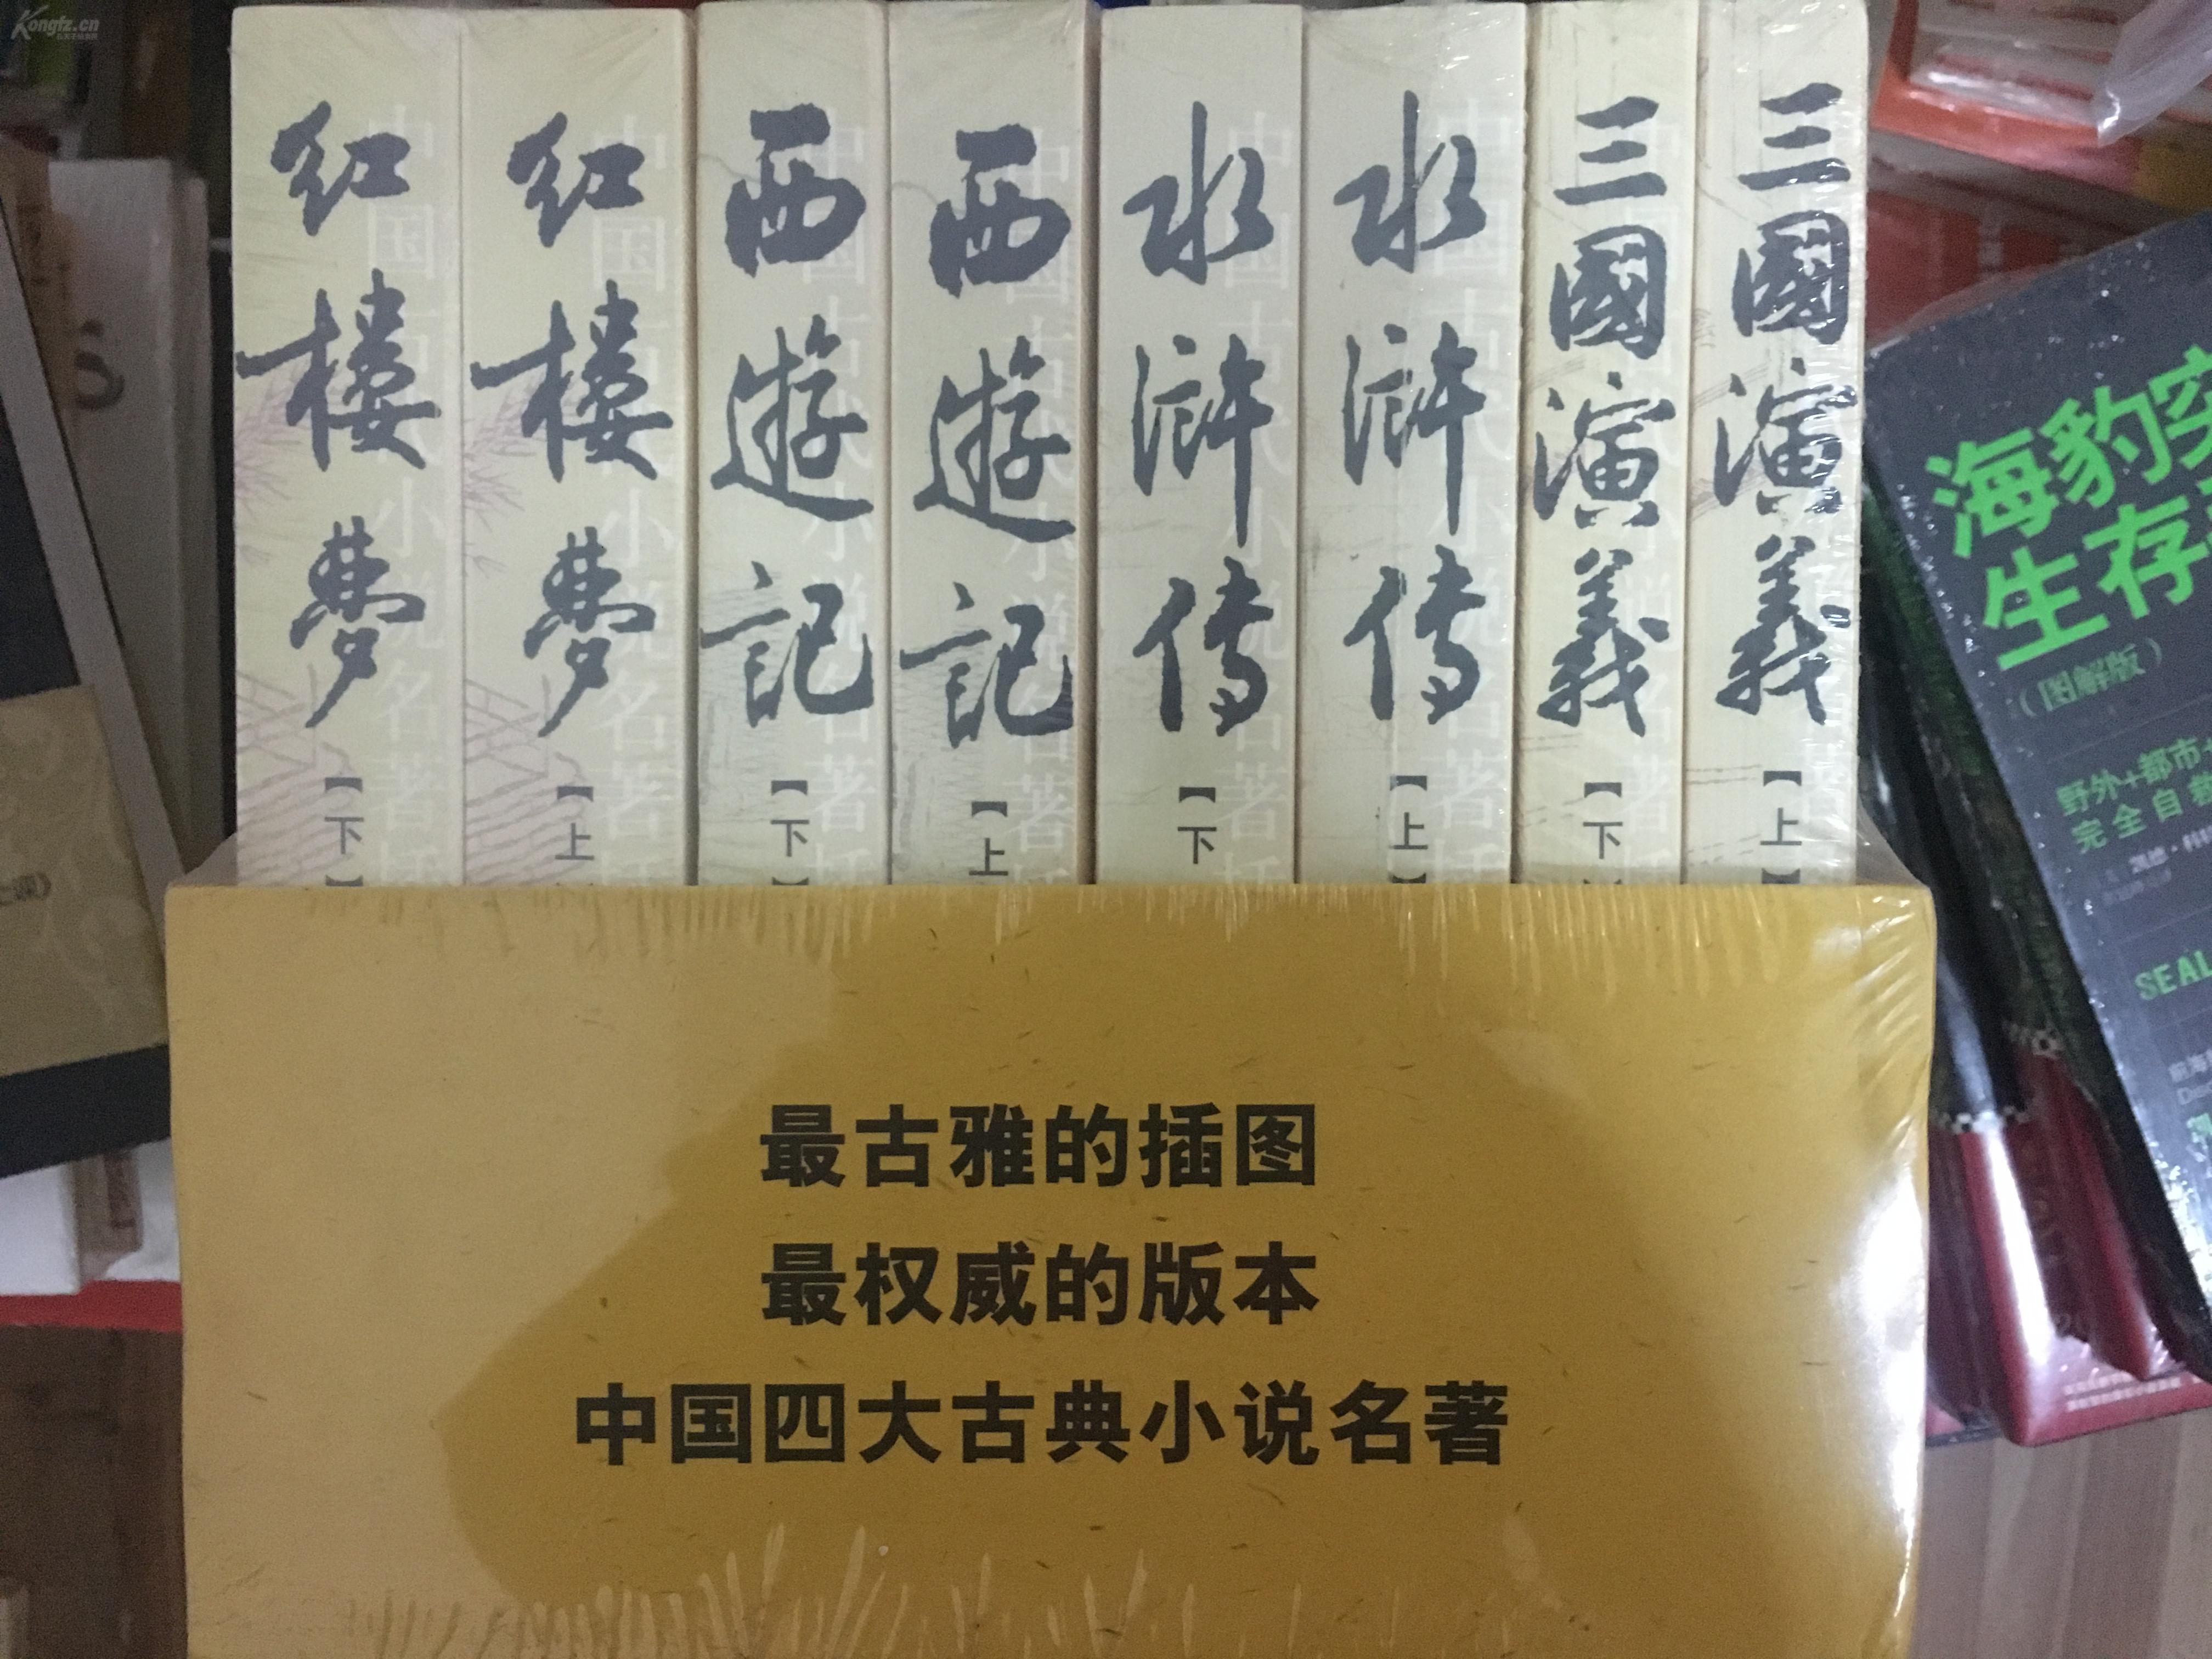 小说四大名著 红楼梦 三国演义 水浒传 西游记(